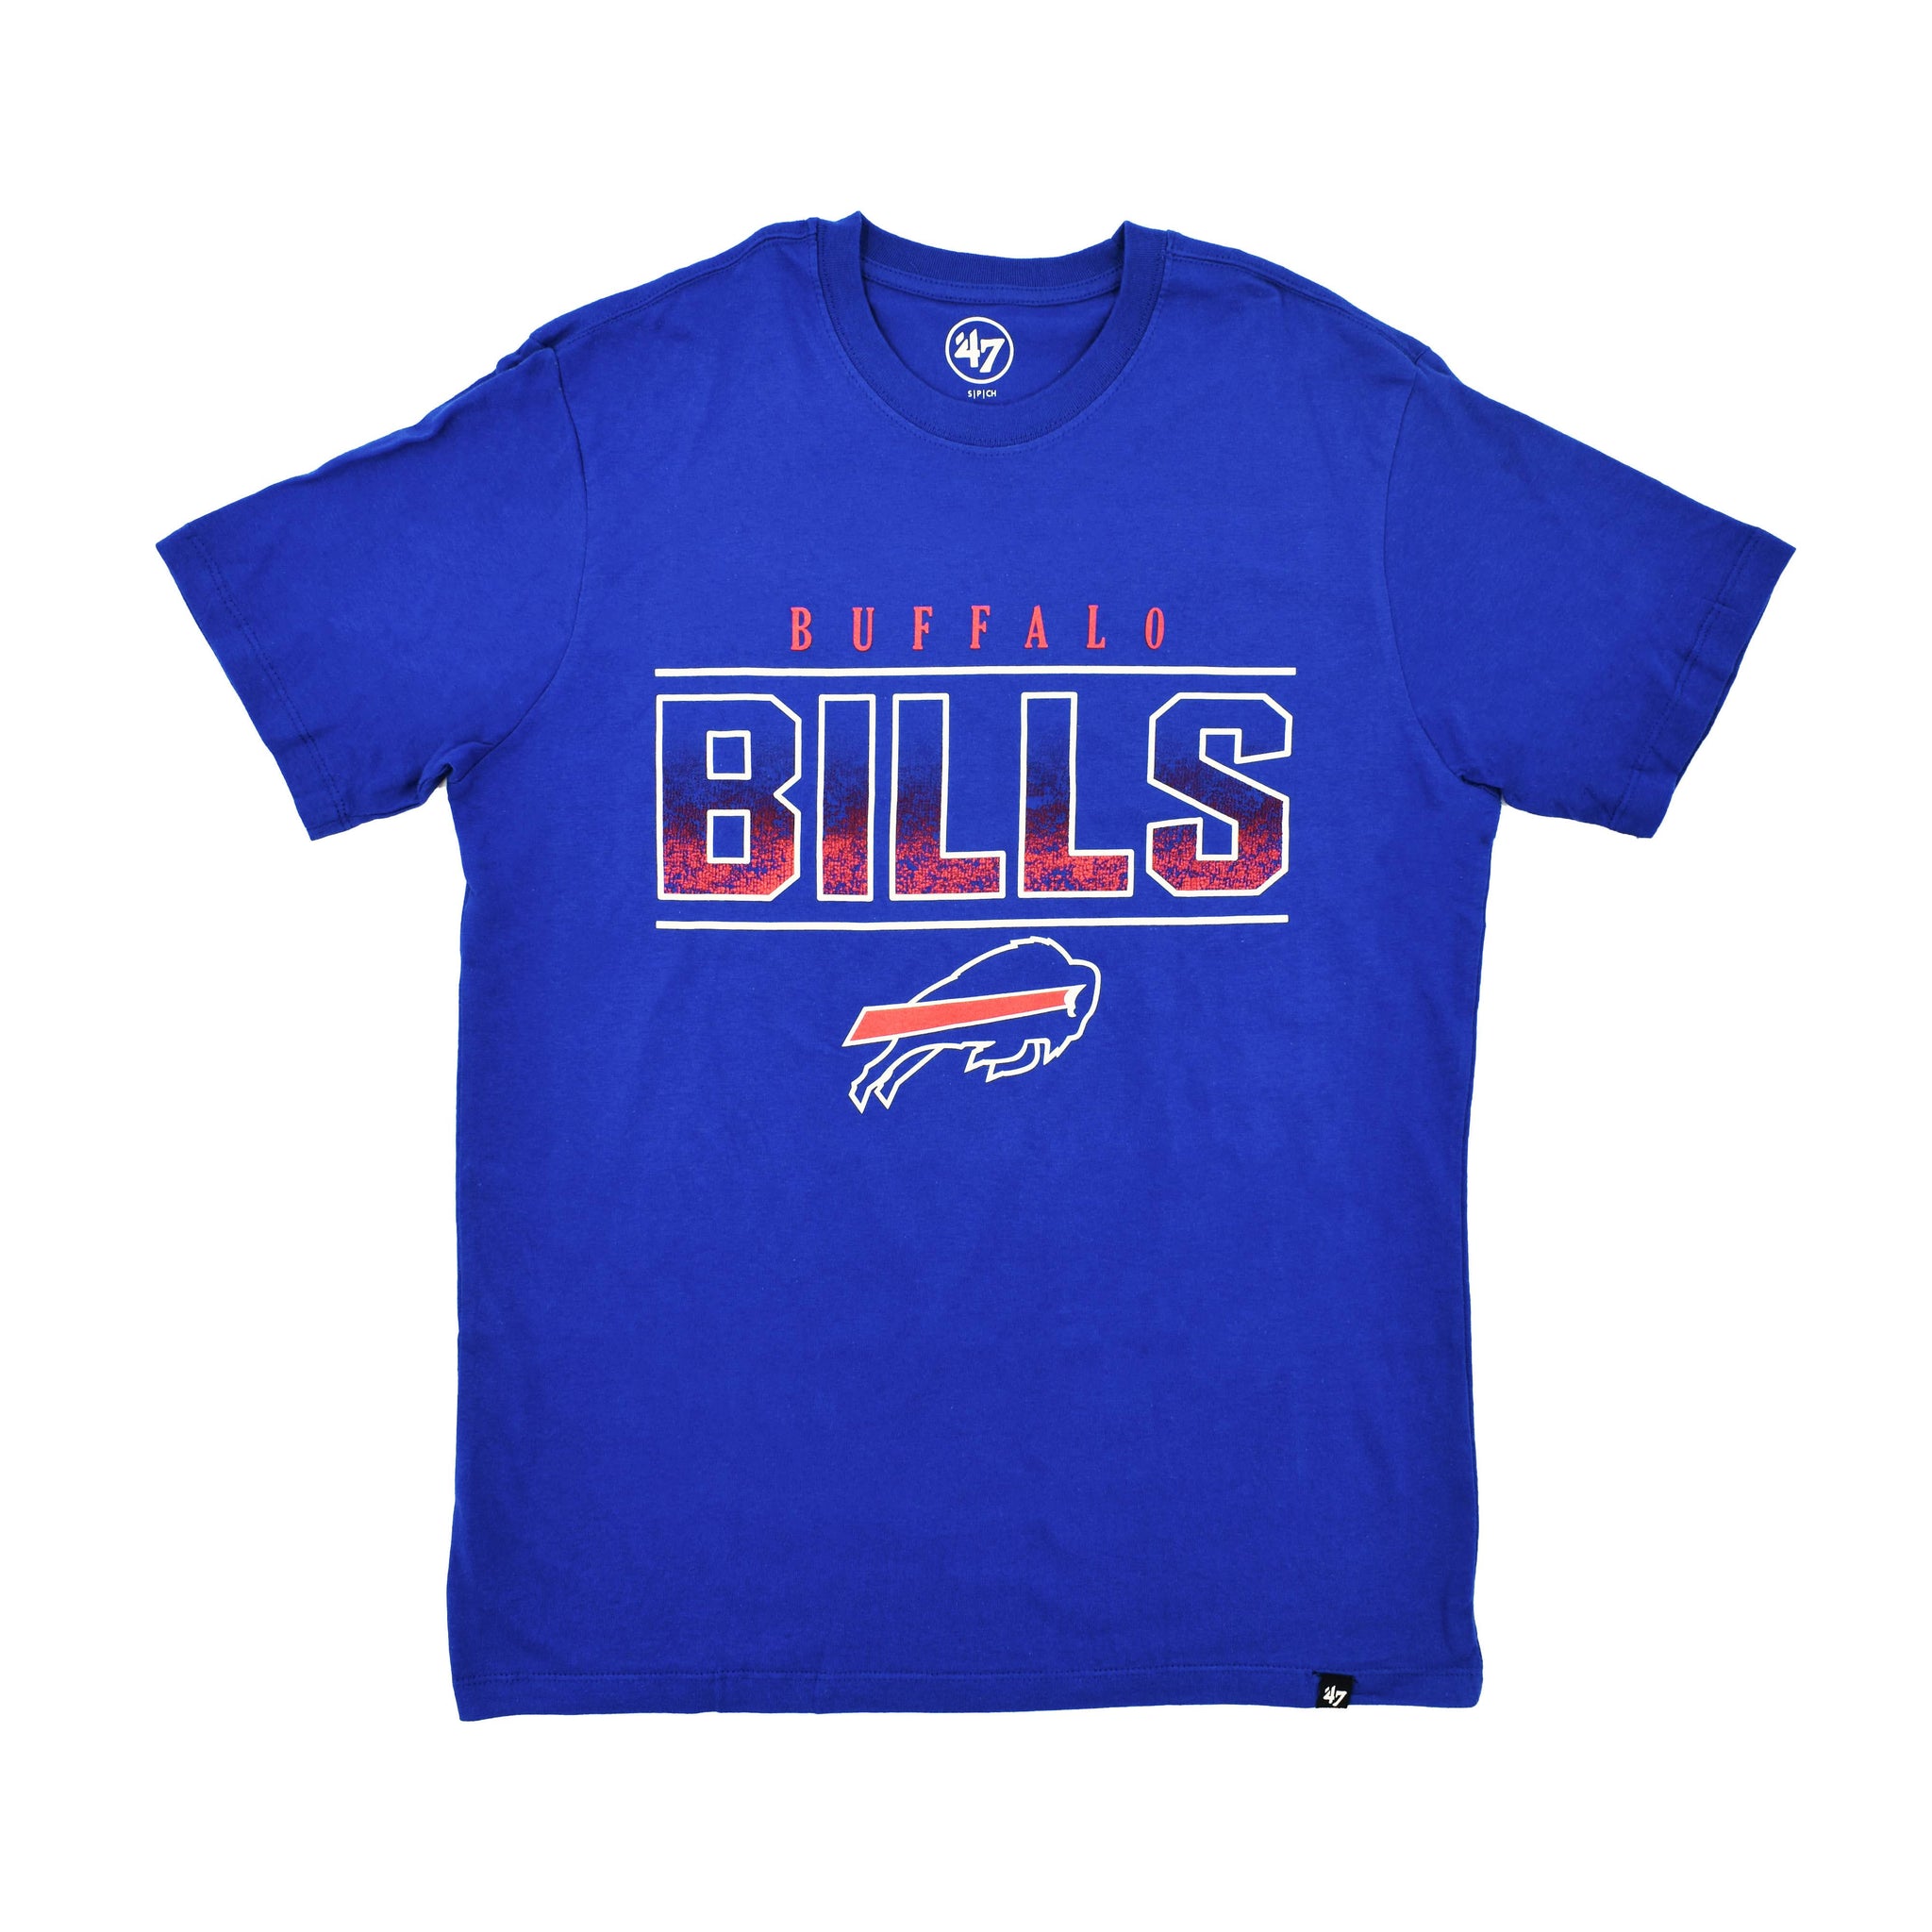 bflo store buffalo bills mens royal fan up super rival short sleeve tee shirt with charging buffalo and bold text